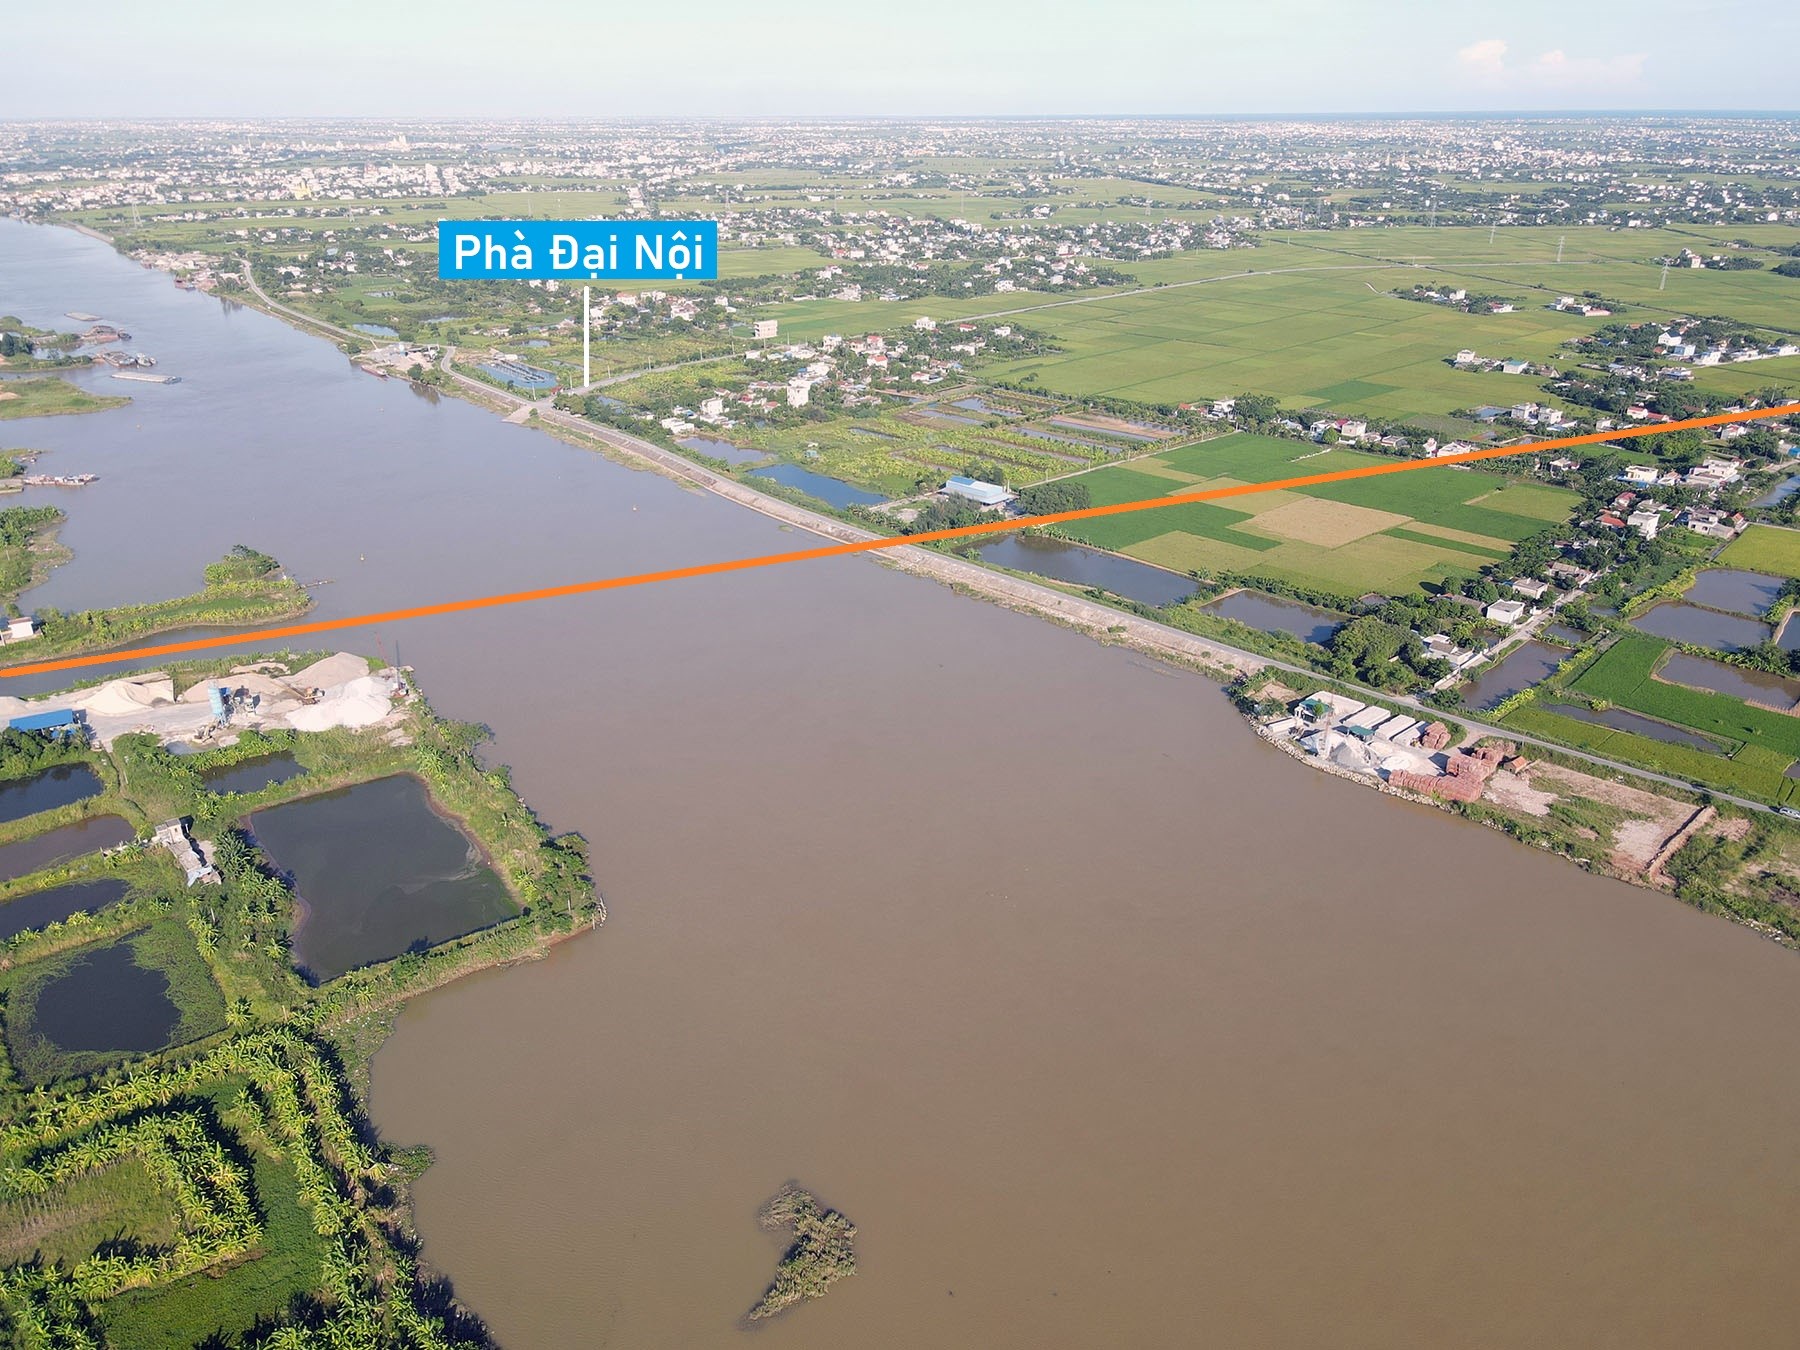 Toàn cảnh vị trí dự kiến quy hoạch cầu Đại Nội vượt sông Ninh Cơ gần phà Đại Nội, Trực Ninh, Nam Định